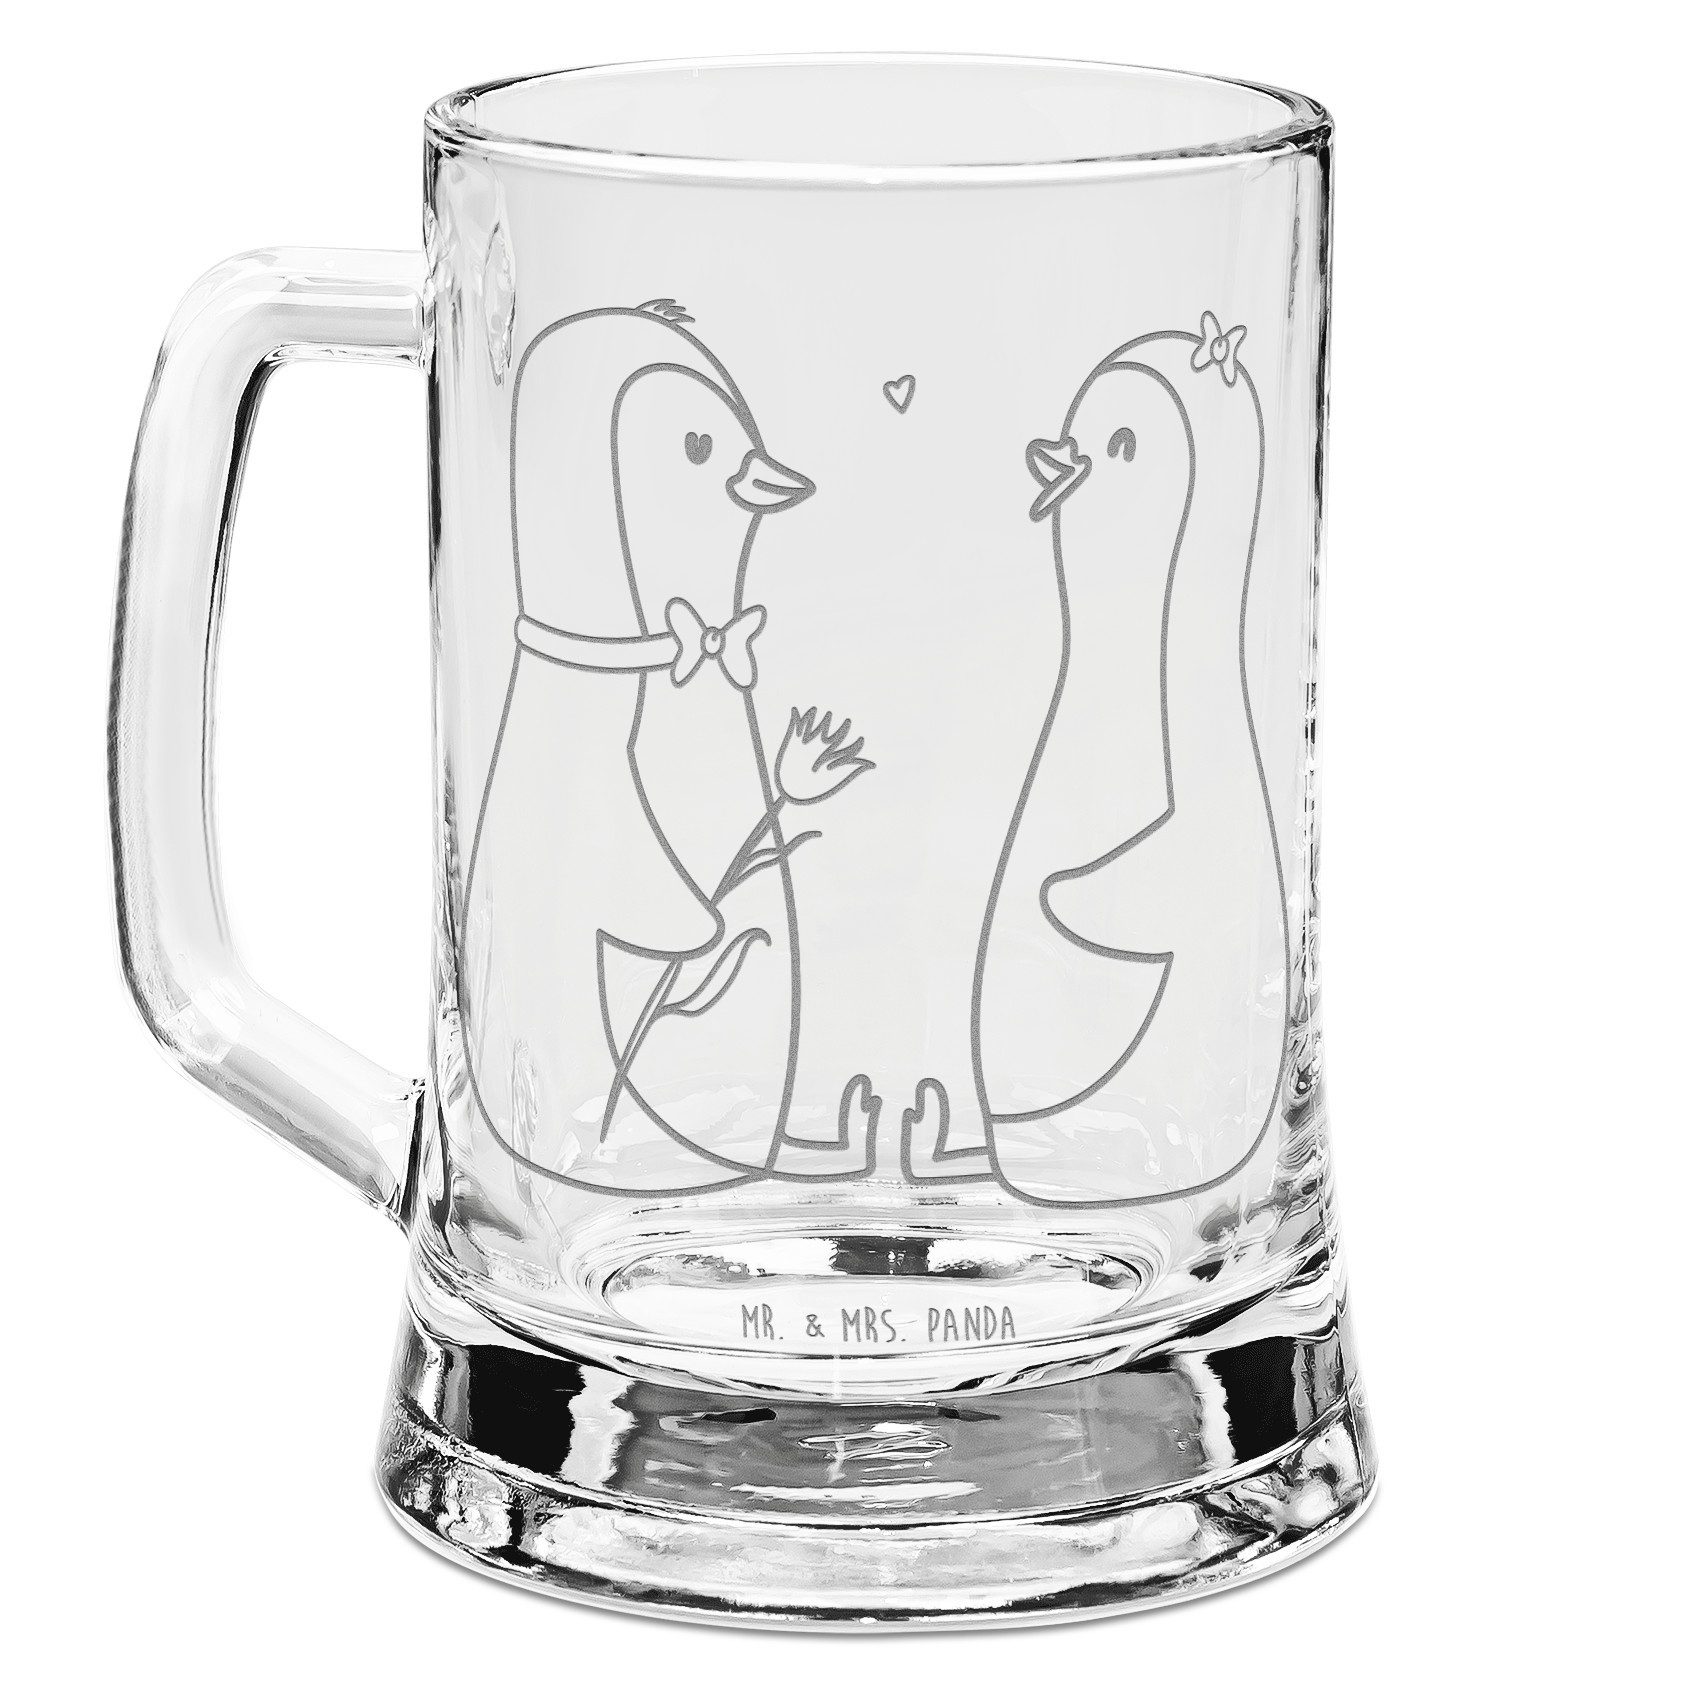 Mr. & Mrs. Panda Bierkrug Pinguin Pärchen - Transparent - Geschenk, Bierkrug Glas, große Liebe, Premium Glas, Spezial Botschaft